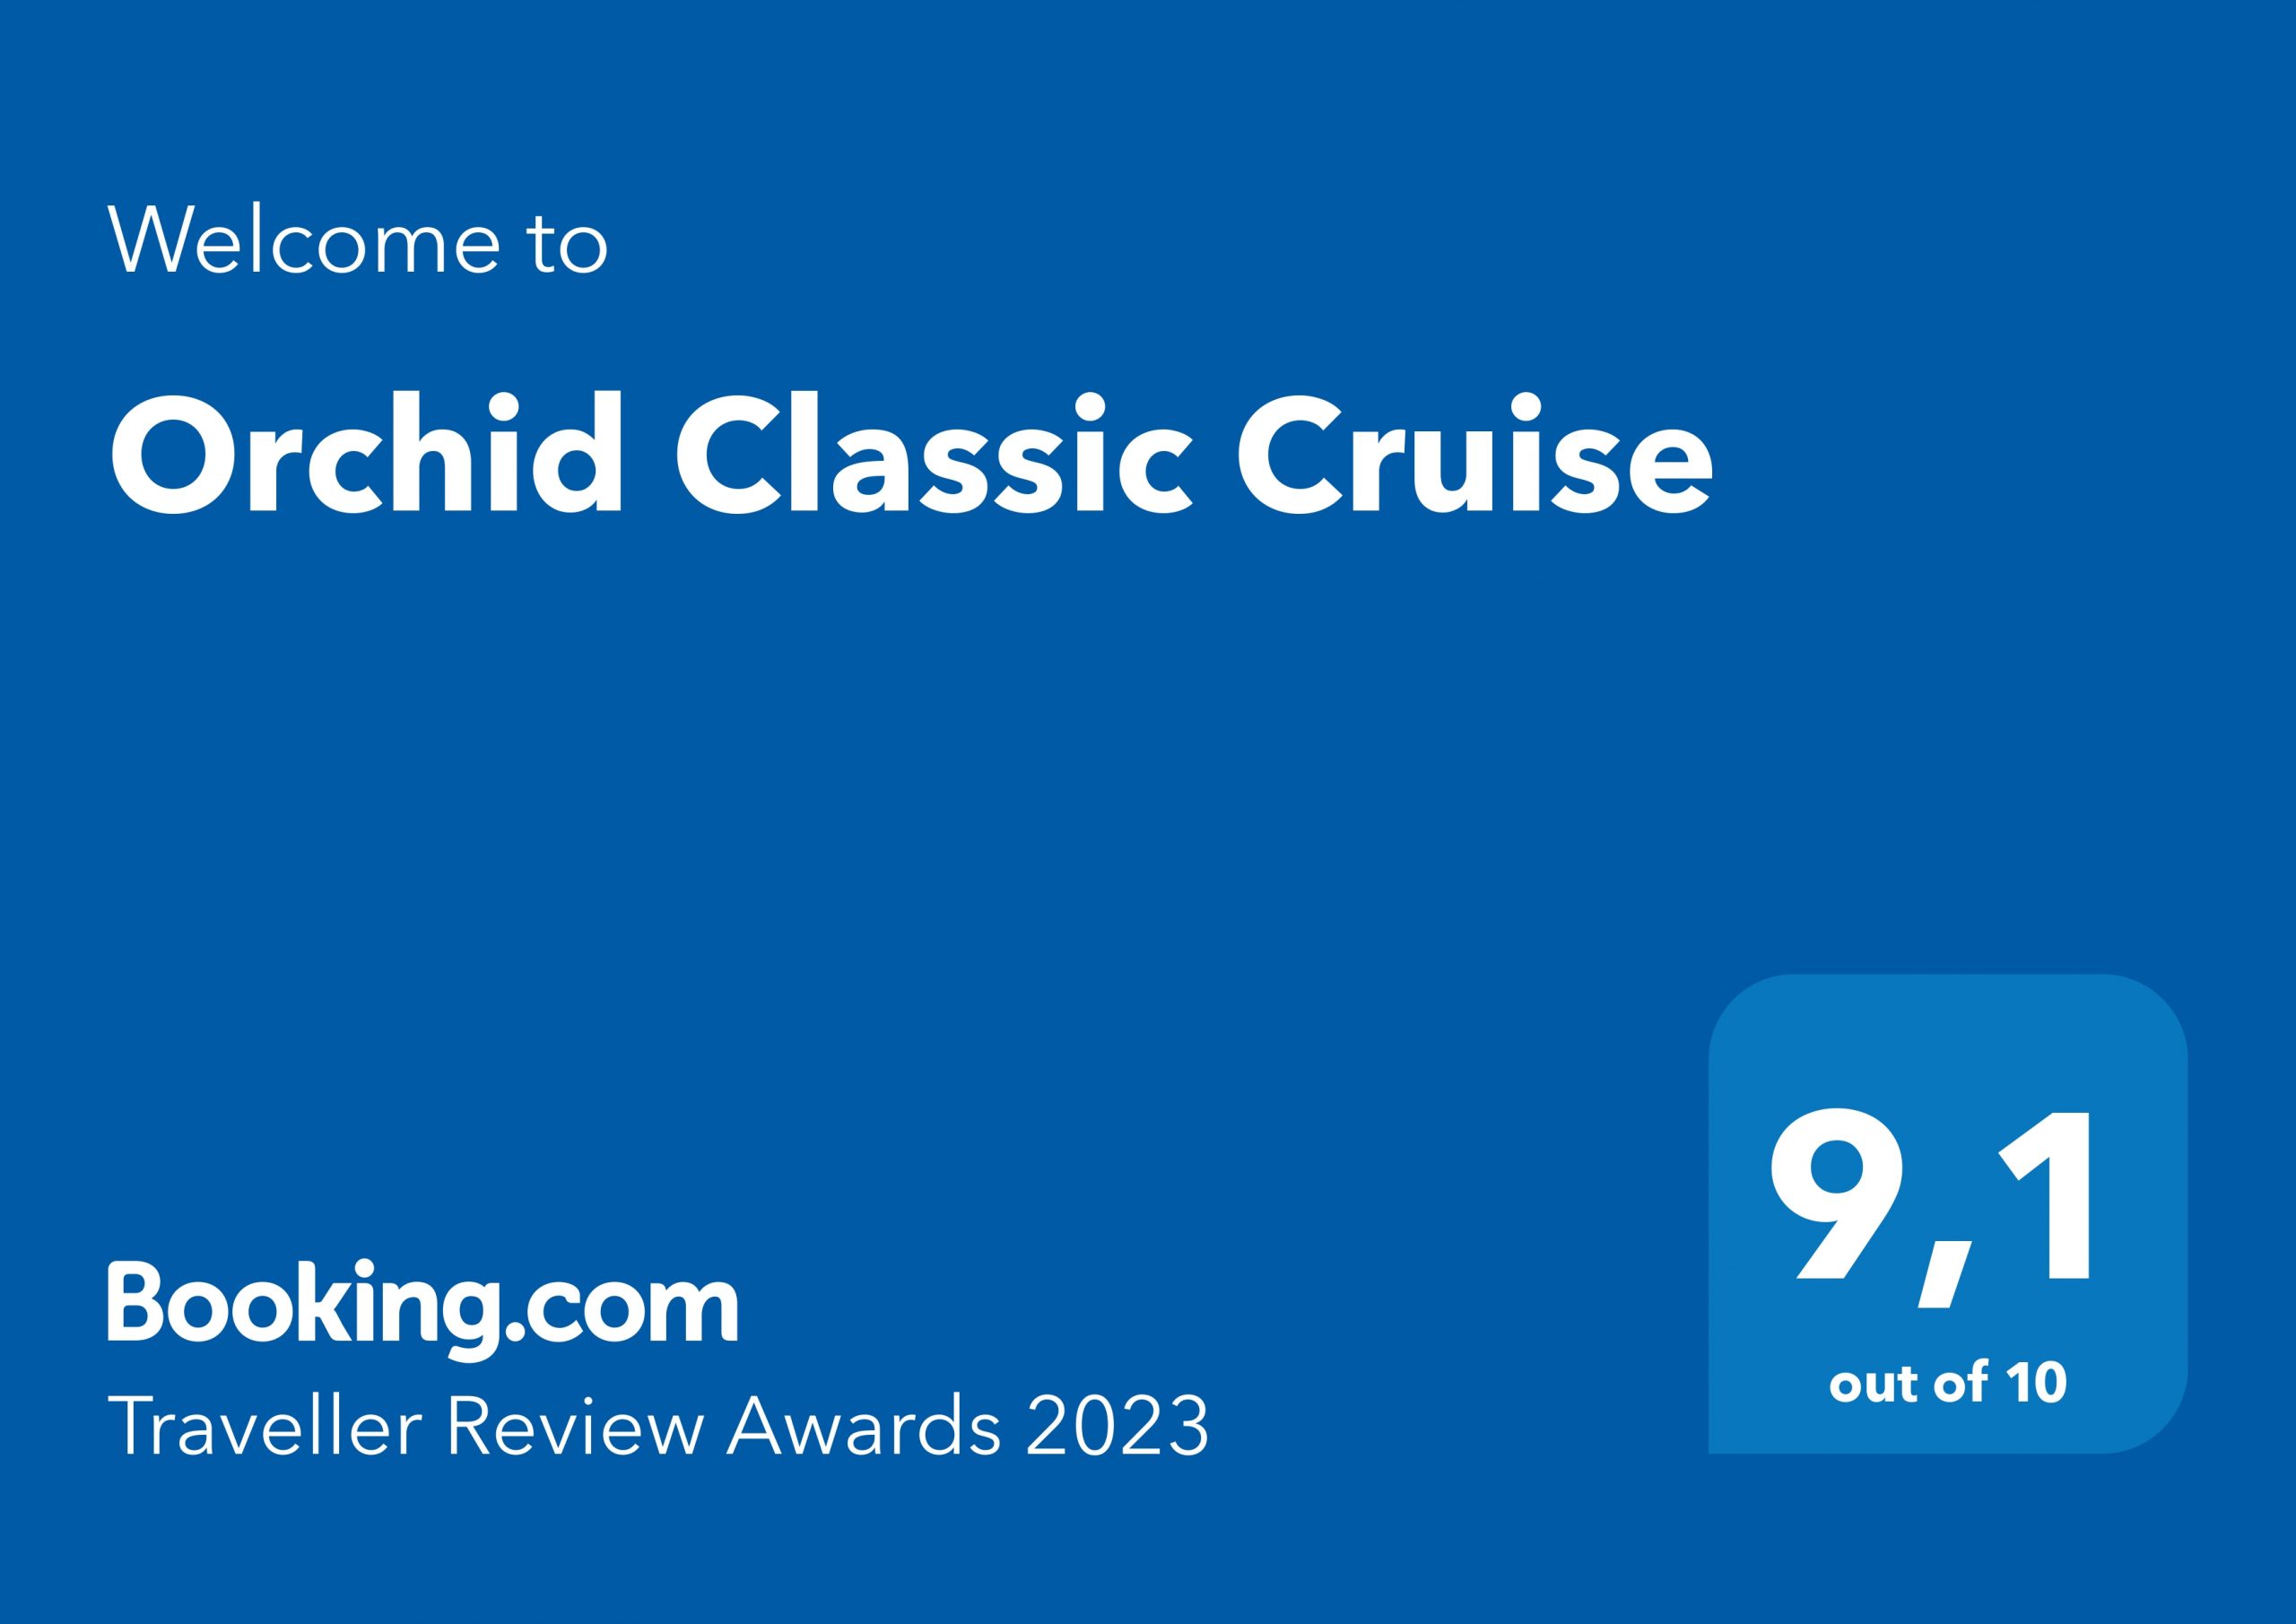 Du thuyền Orchid nhận giải thưởng Traveller Review Award 2023 của Booking.com